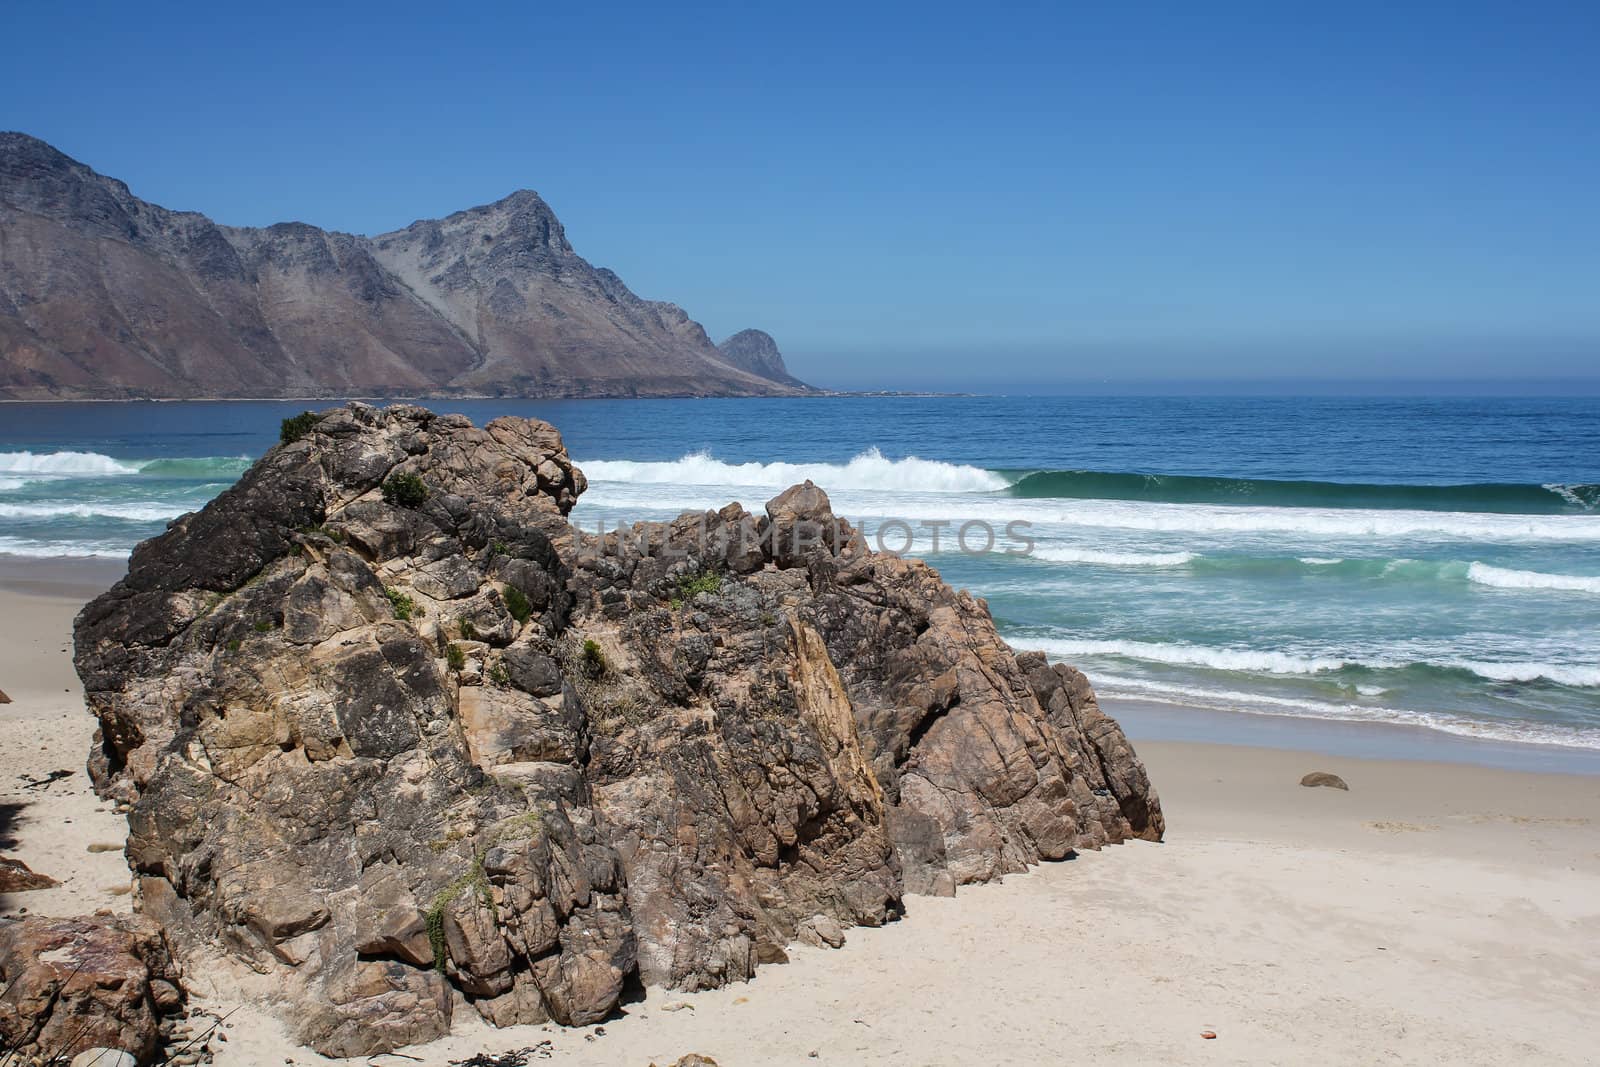 Beach along south africas coastline by dwaschnig_photo